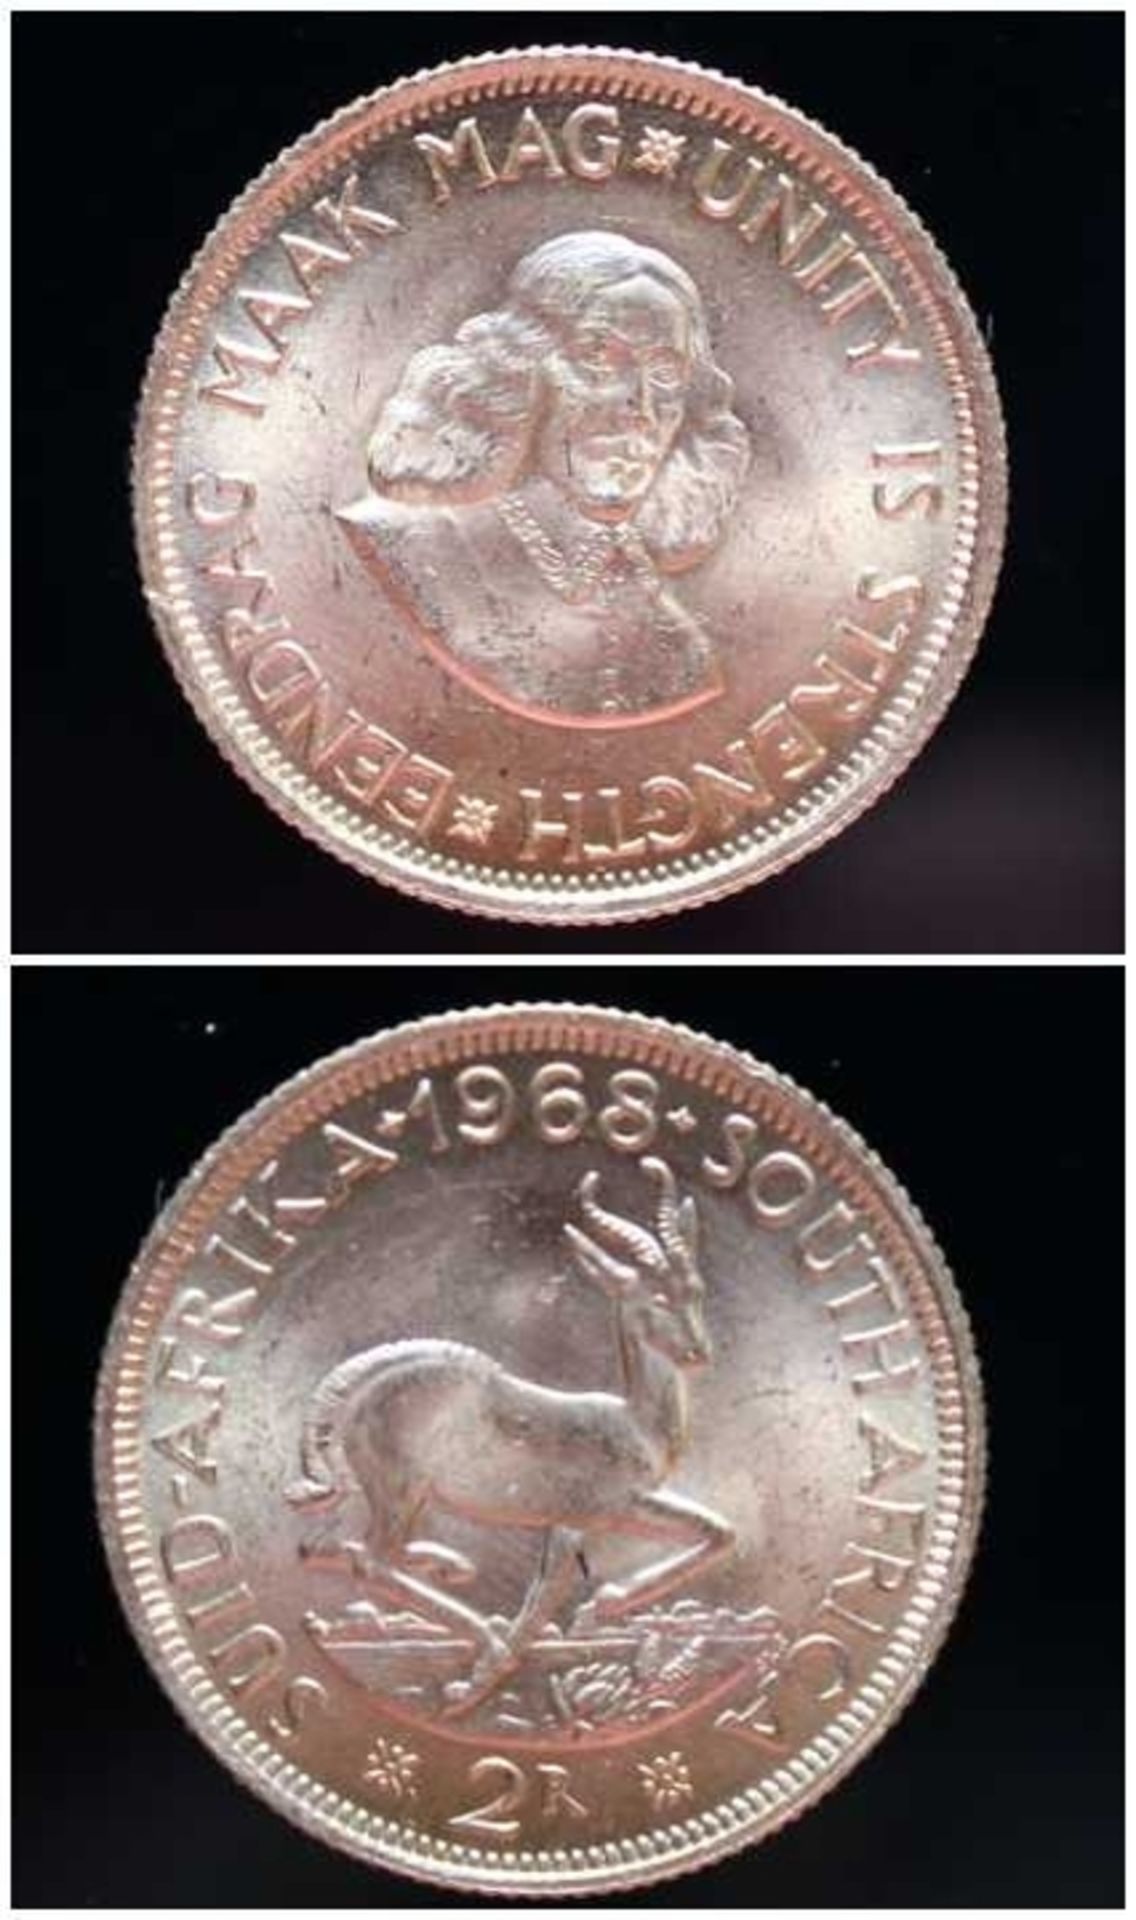 2 Rand Goldmünze - South Afrika 1968 Rs: Südafrikanisches Wappentier Springbock, Vs: Portrait von